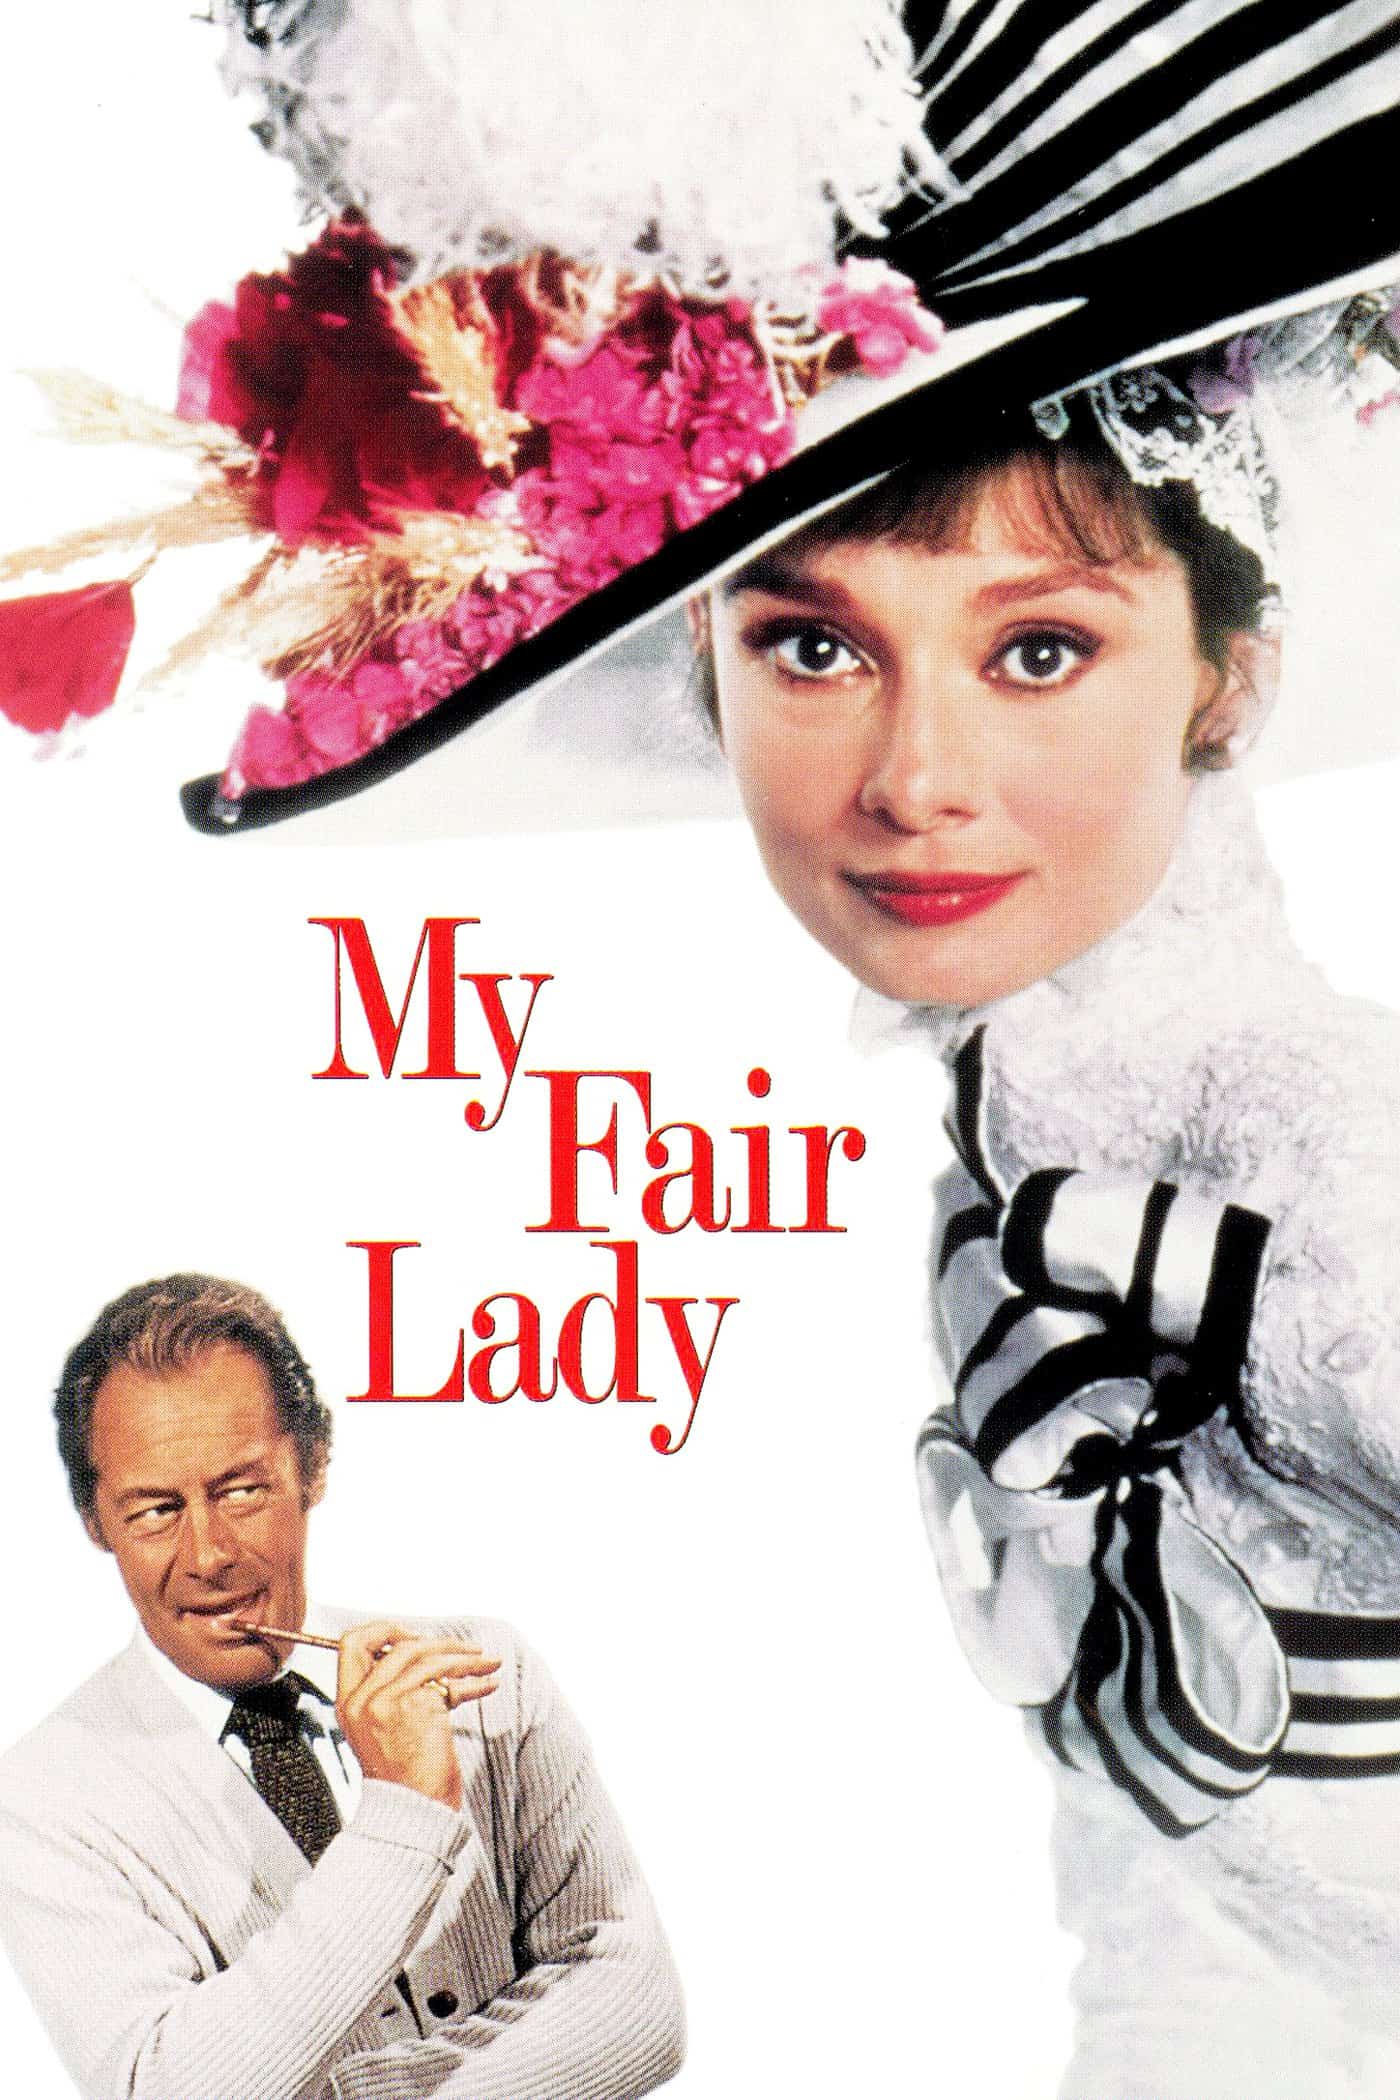 My Fair Lady, 1964 